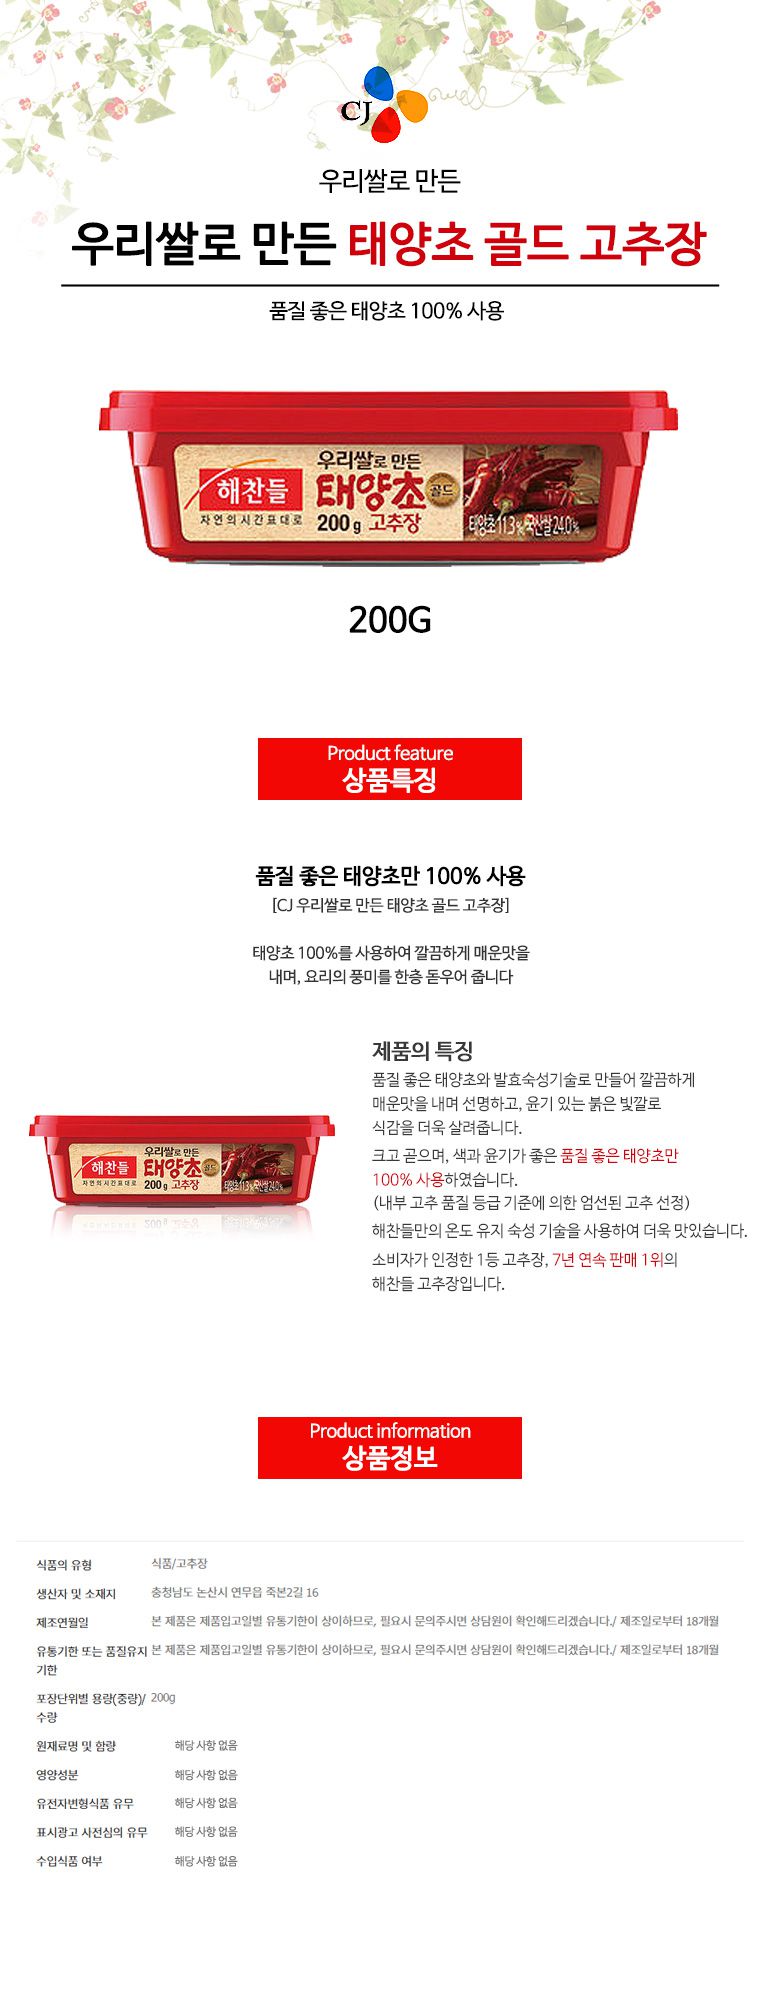 韓國食品-[CJ] 해찬들 태양초고추장 200g